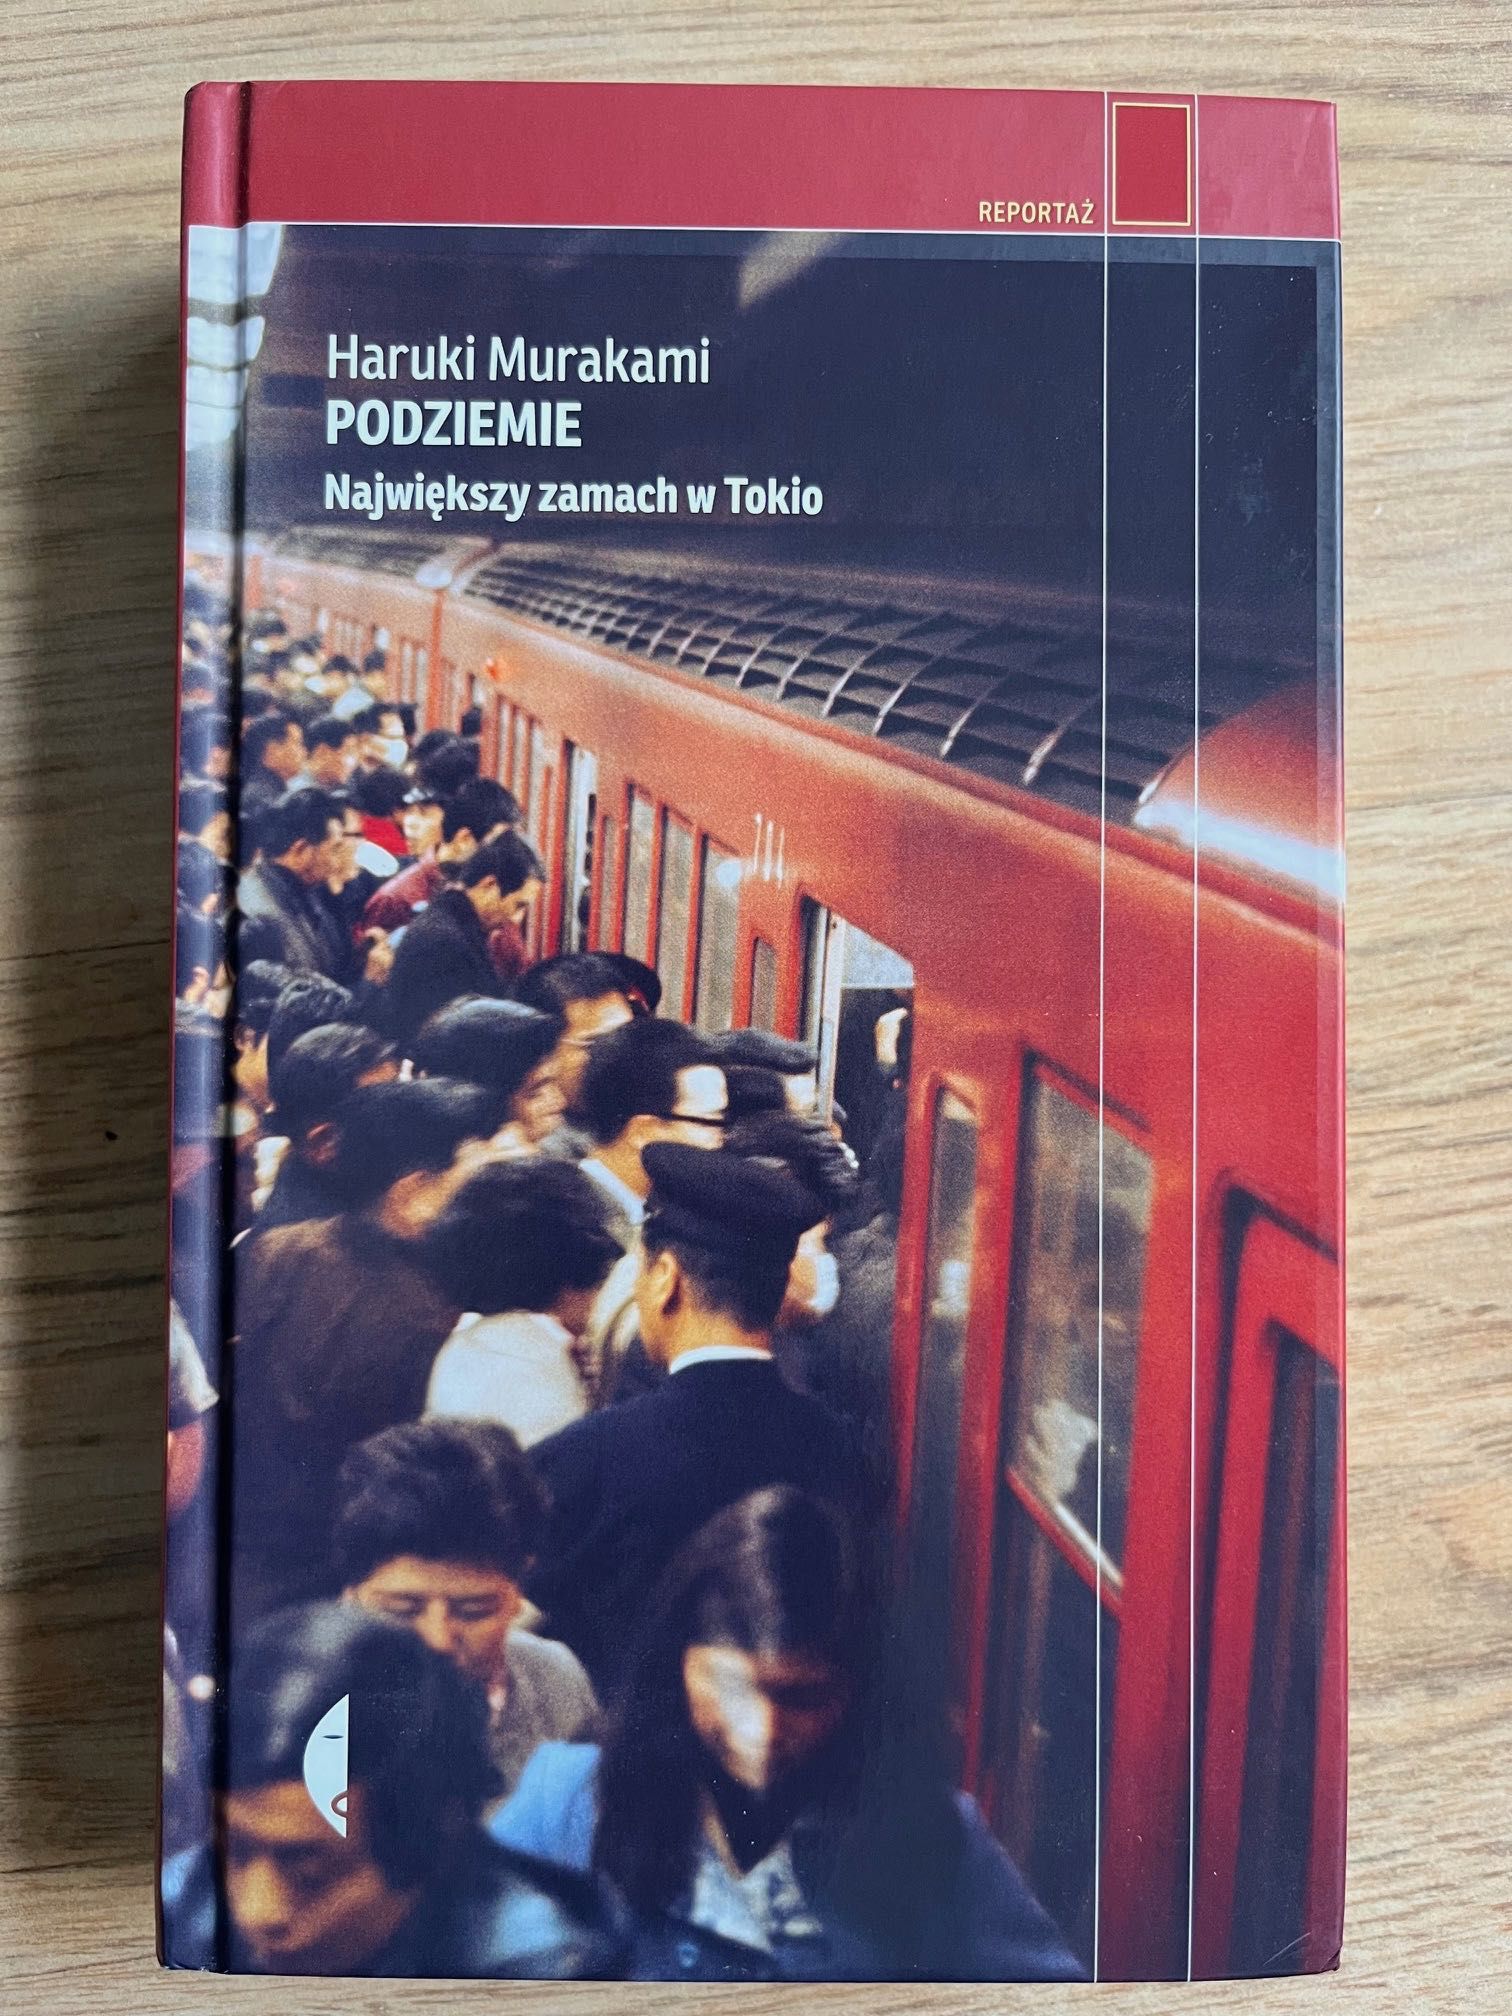 Haruki Murakami ,, Podziemie ,,